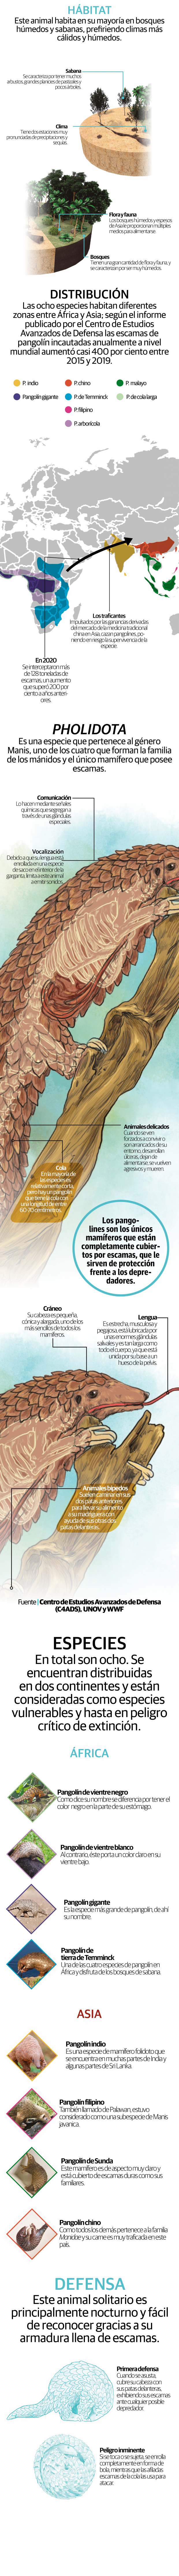 Pangolines, los mamíferos más traficados del mundo, en peligro de extinción